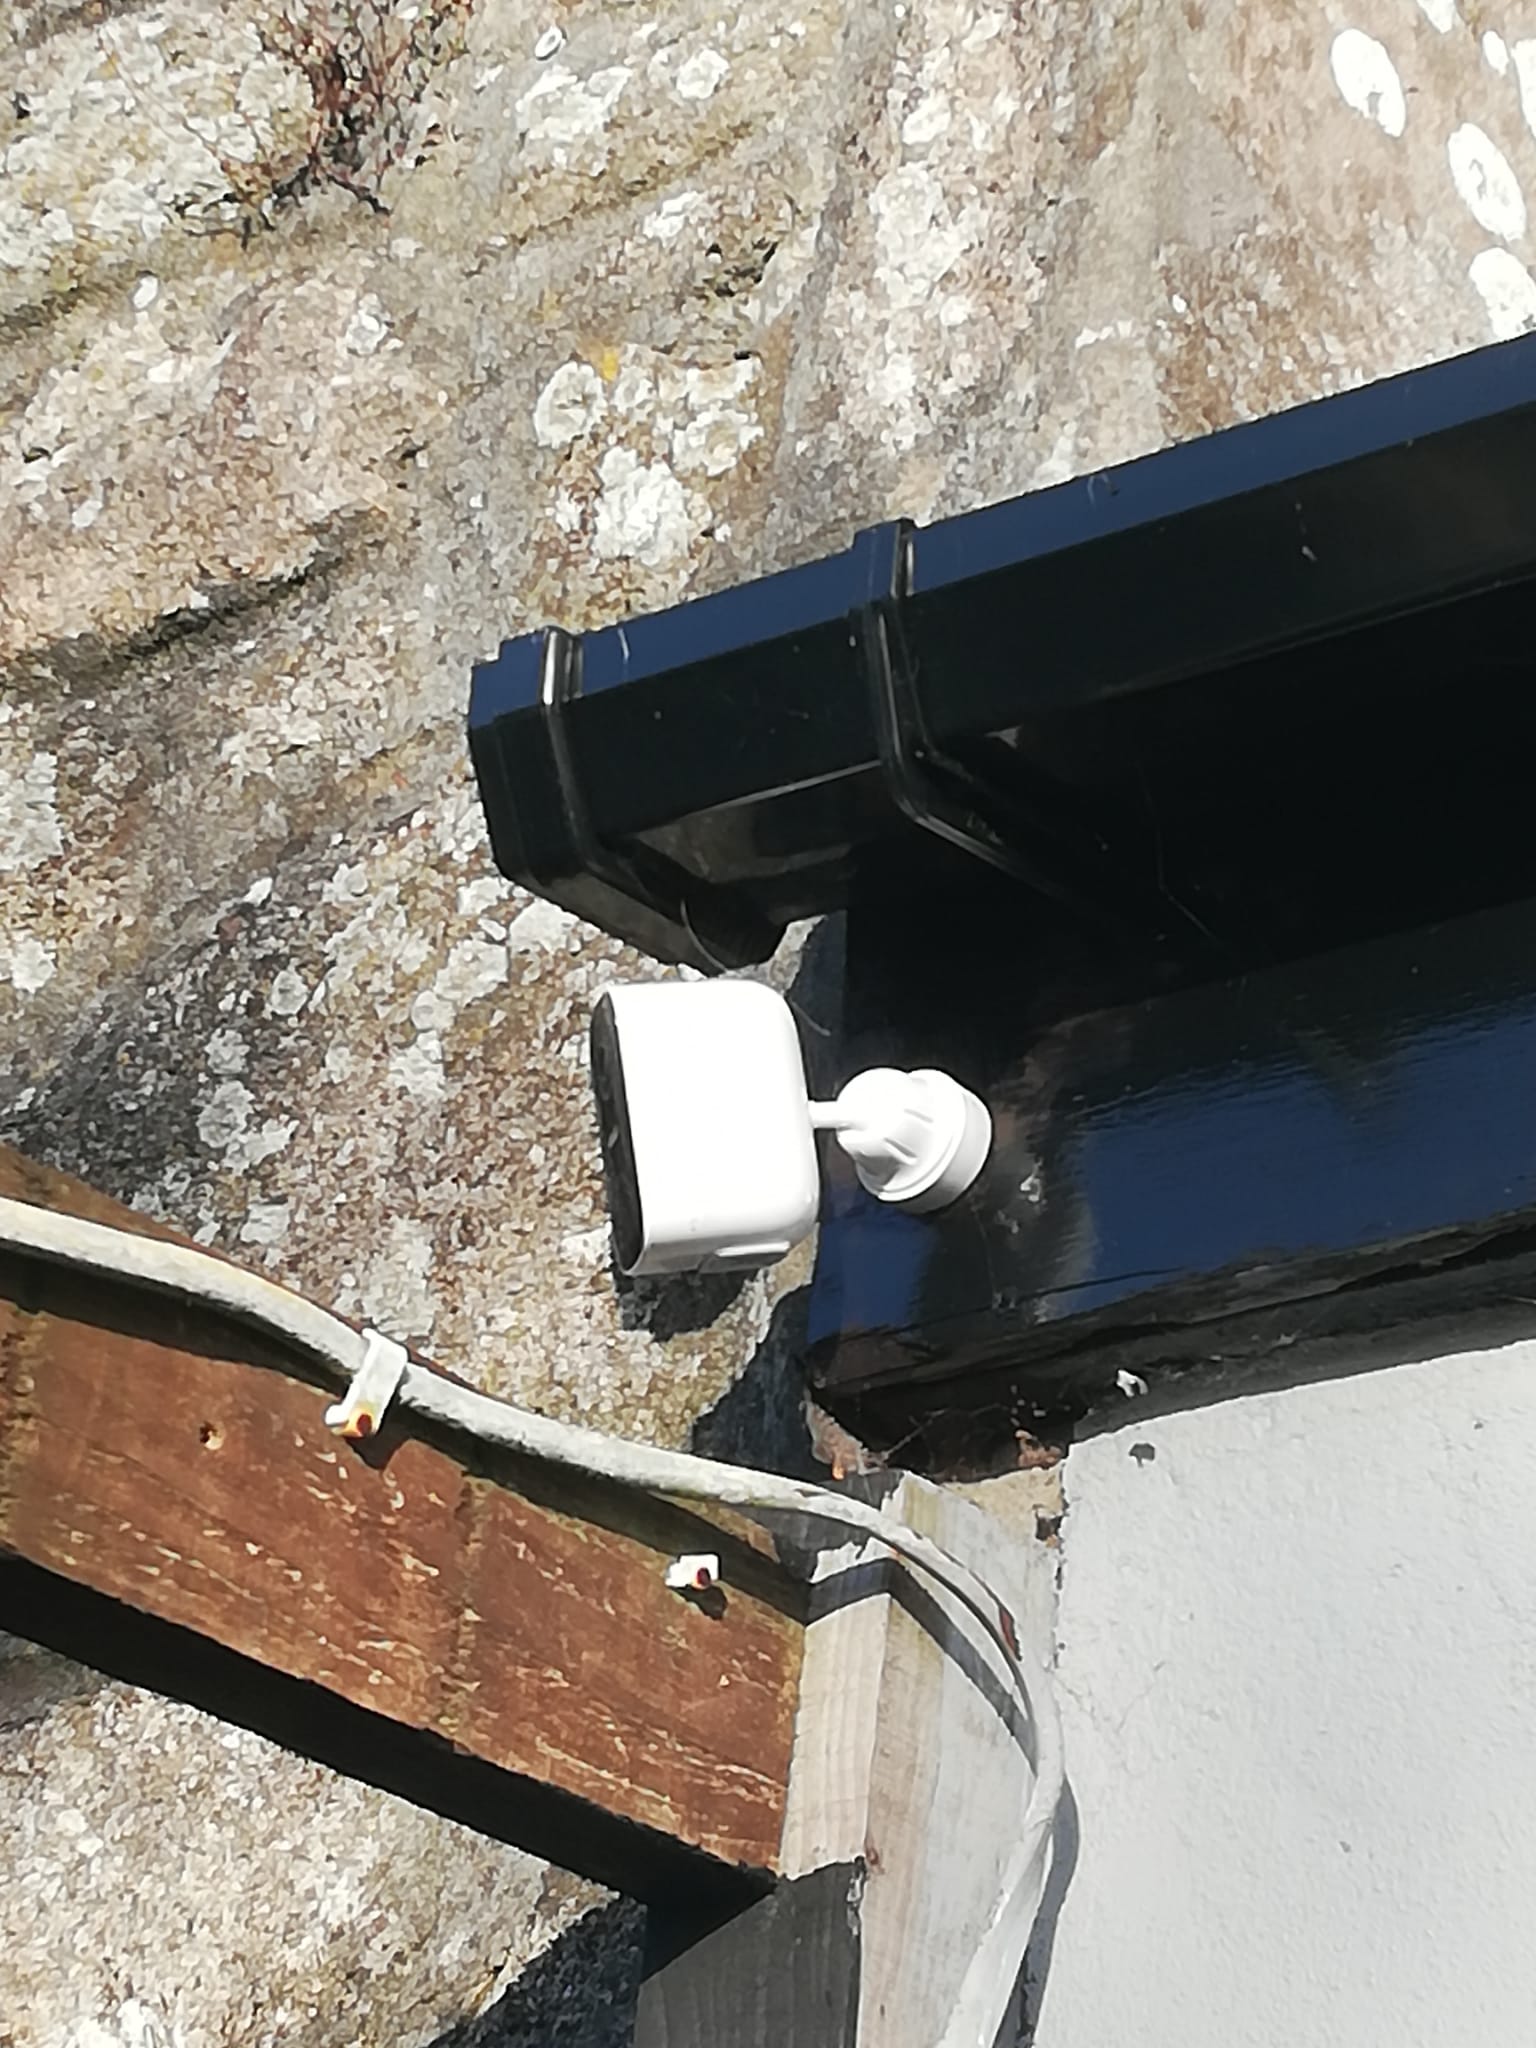 CCTV Install 